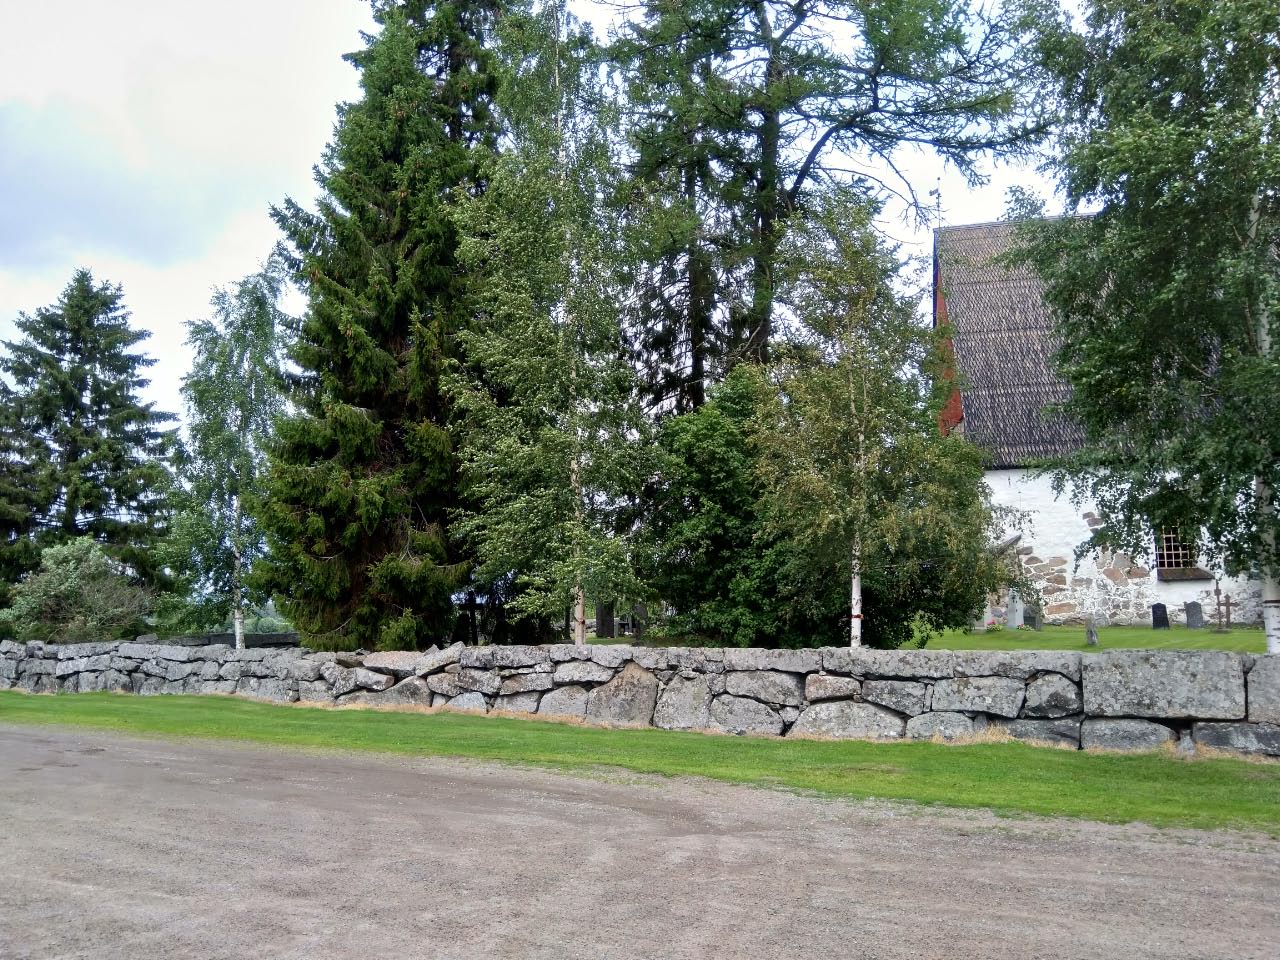 Kuva: Vanha kirkko, Isokyrö. Yleiskuva. Janne Rantanen. CC BY 4.0 Janne Rantanen 24.7.2020